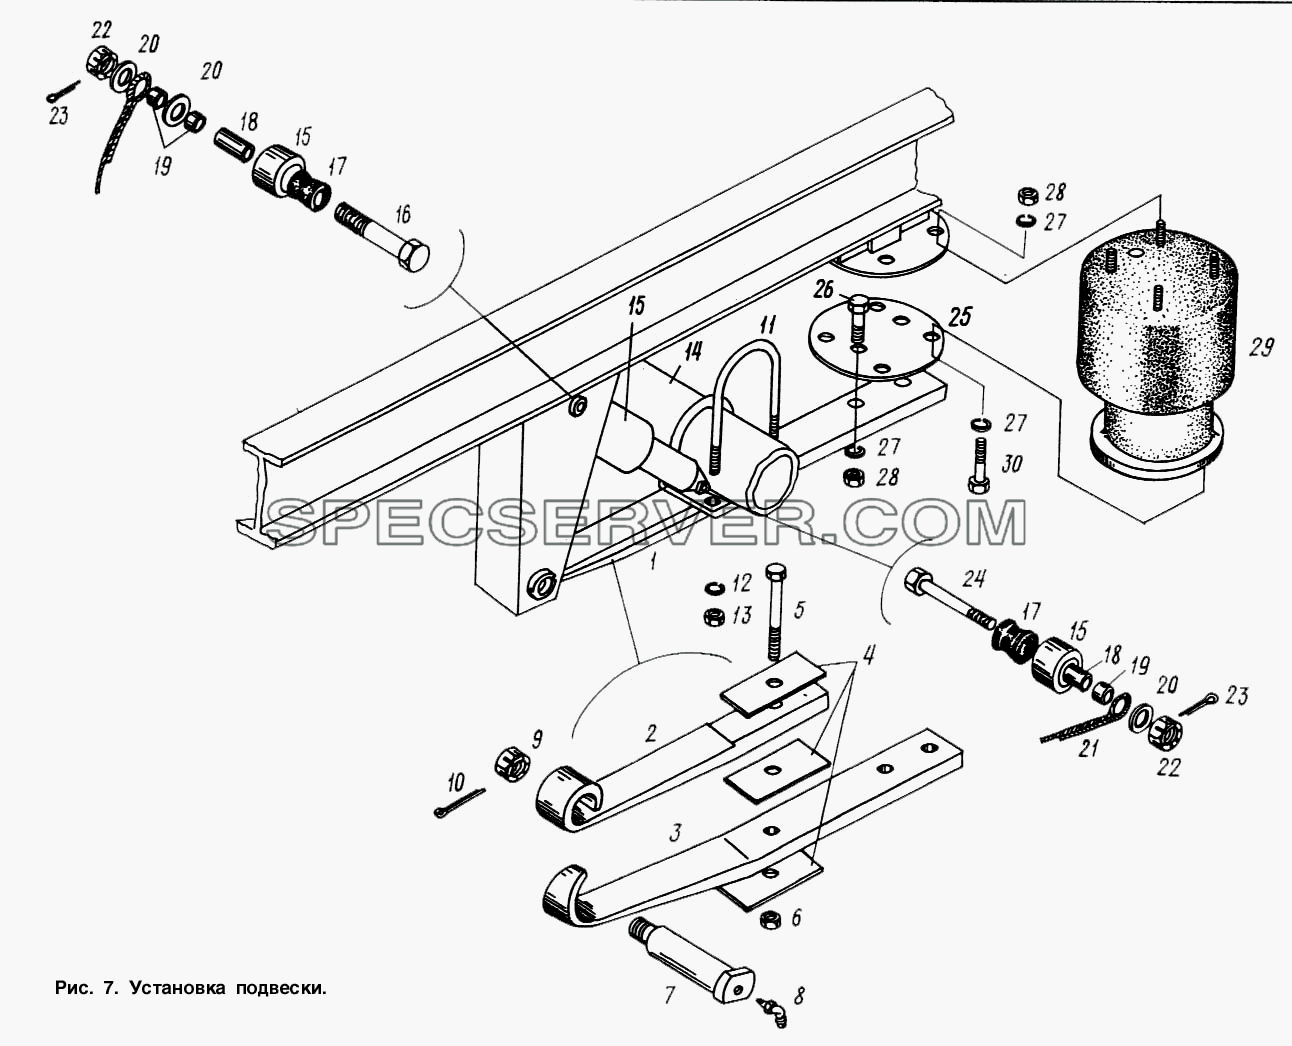 Установка подвески для МАЗ-9758 (список запасных частей)